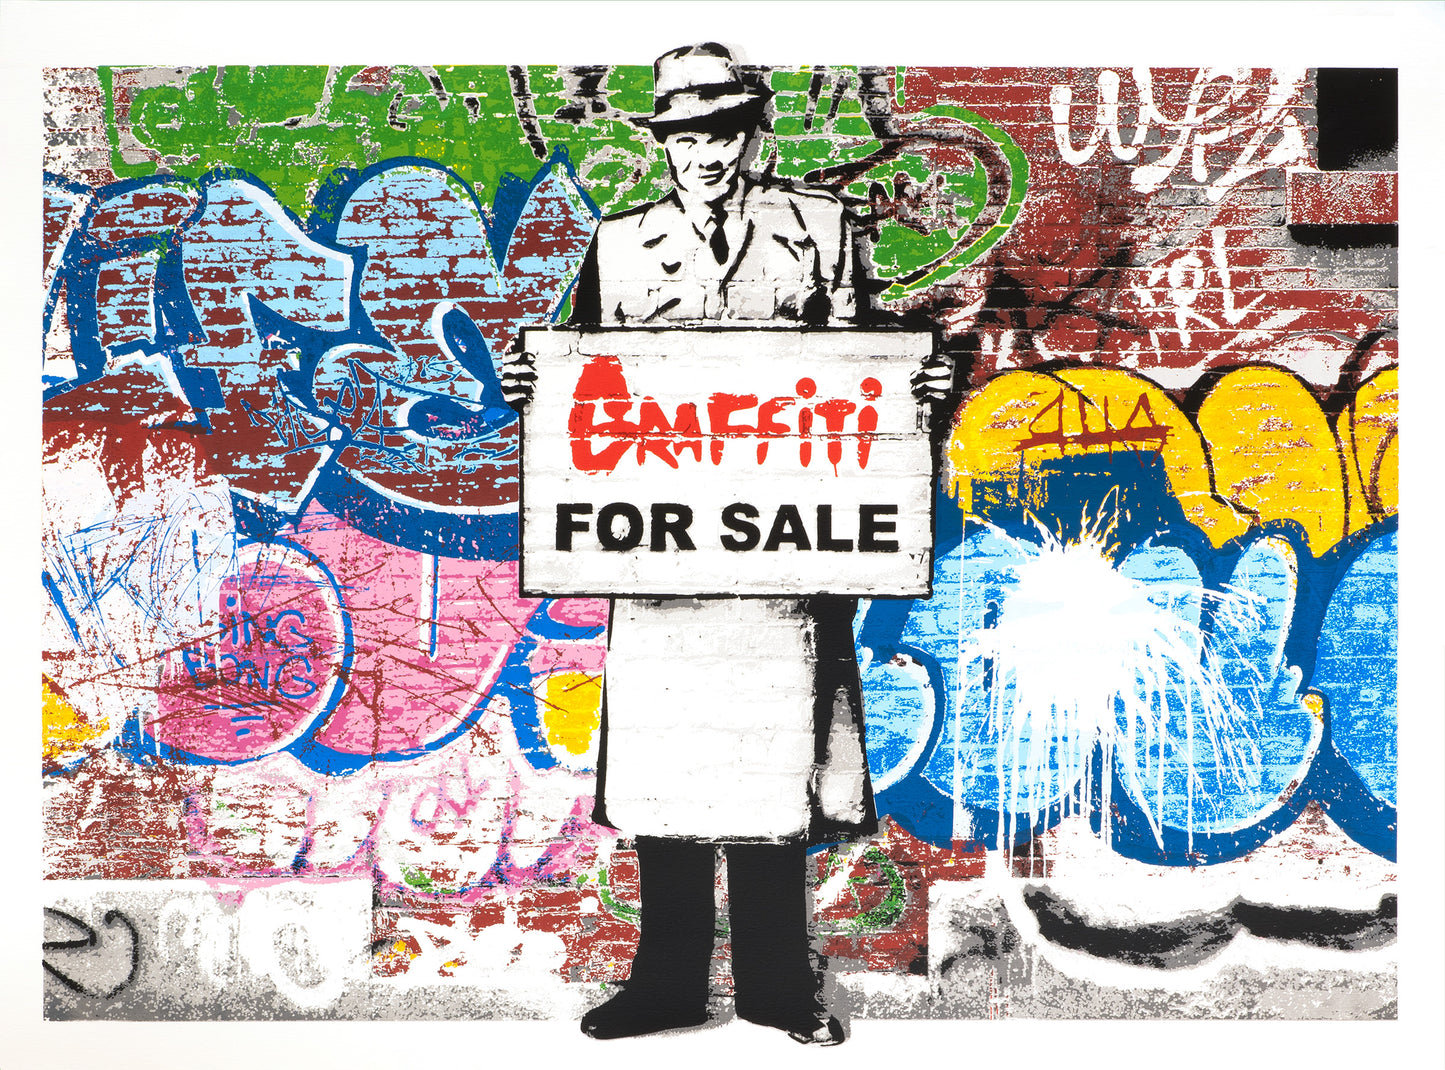 "Graffiti for Sale"